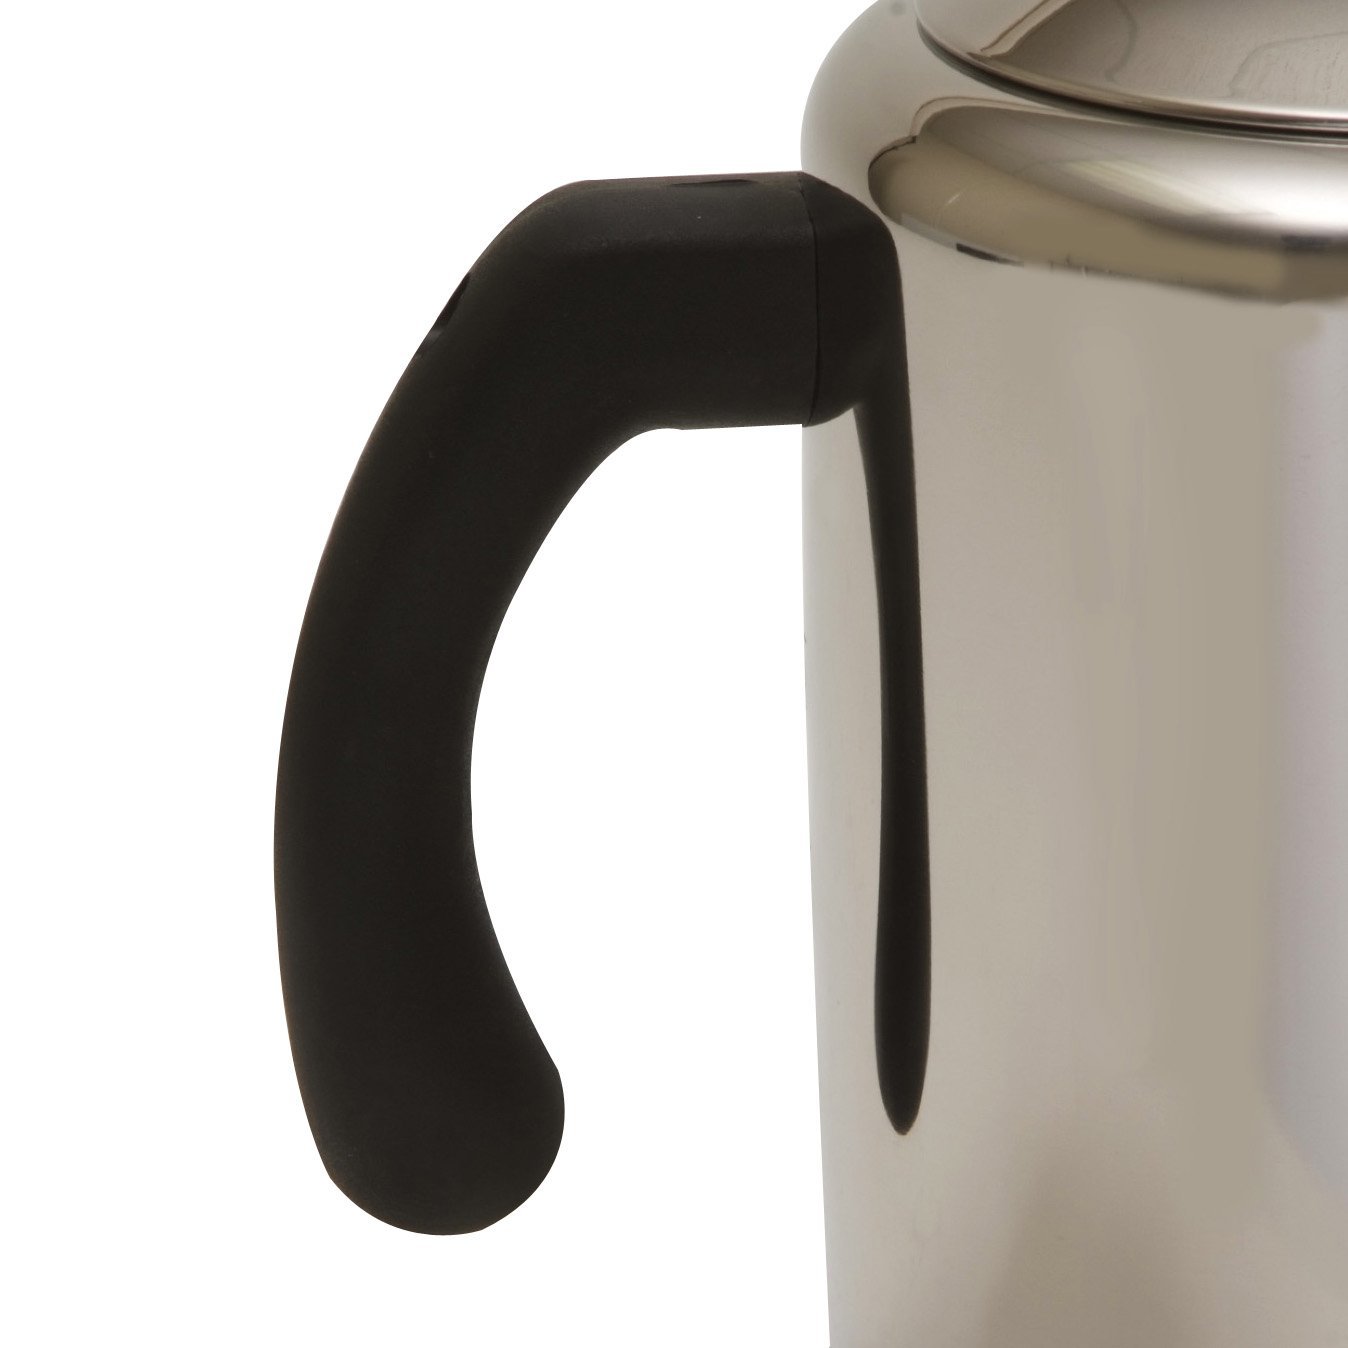 OEM pote de café fabricante fabricante de pote de café do arco-íris china aço inoxidável pote de Café atacado